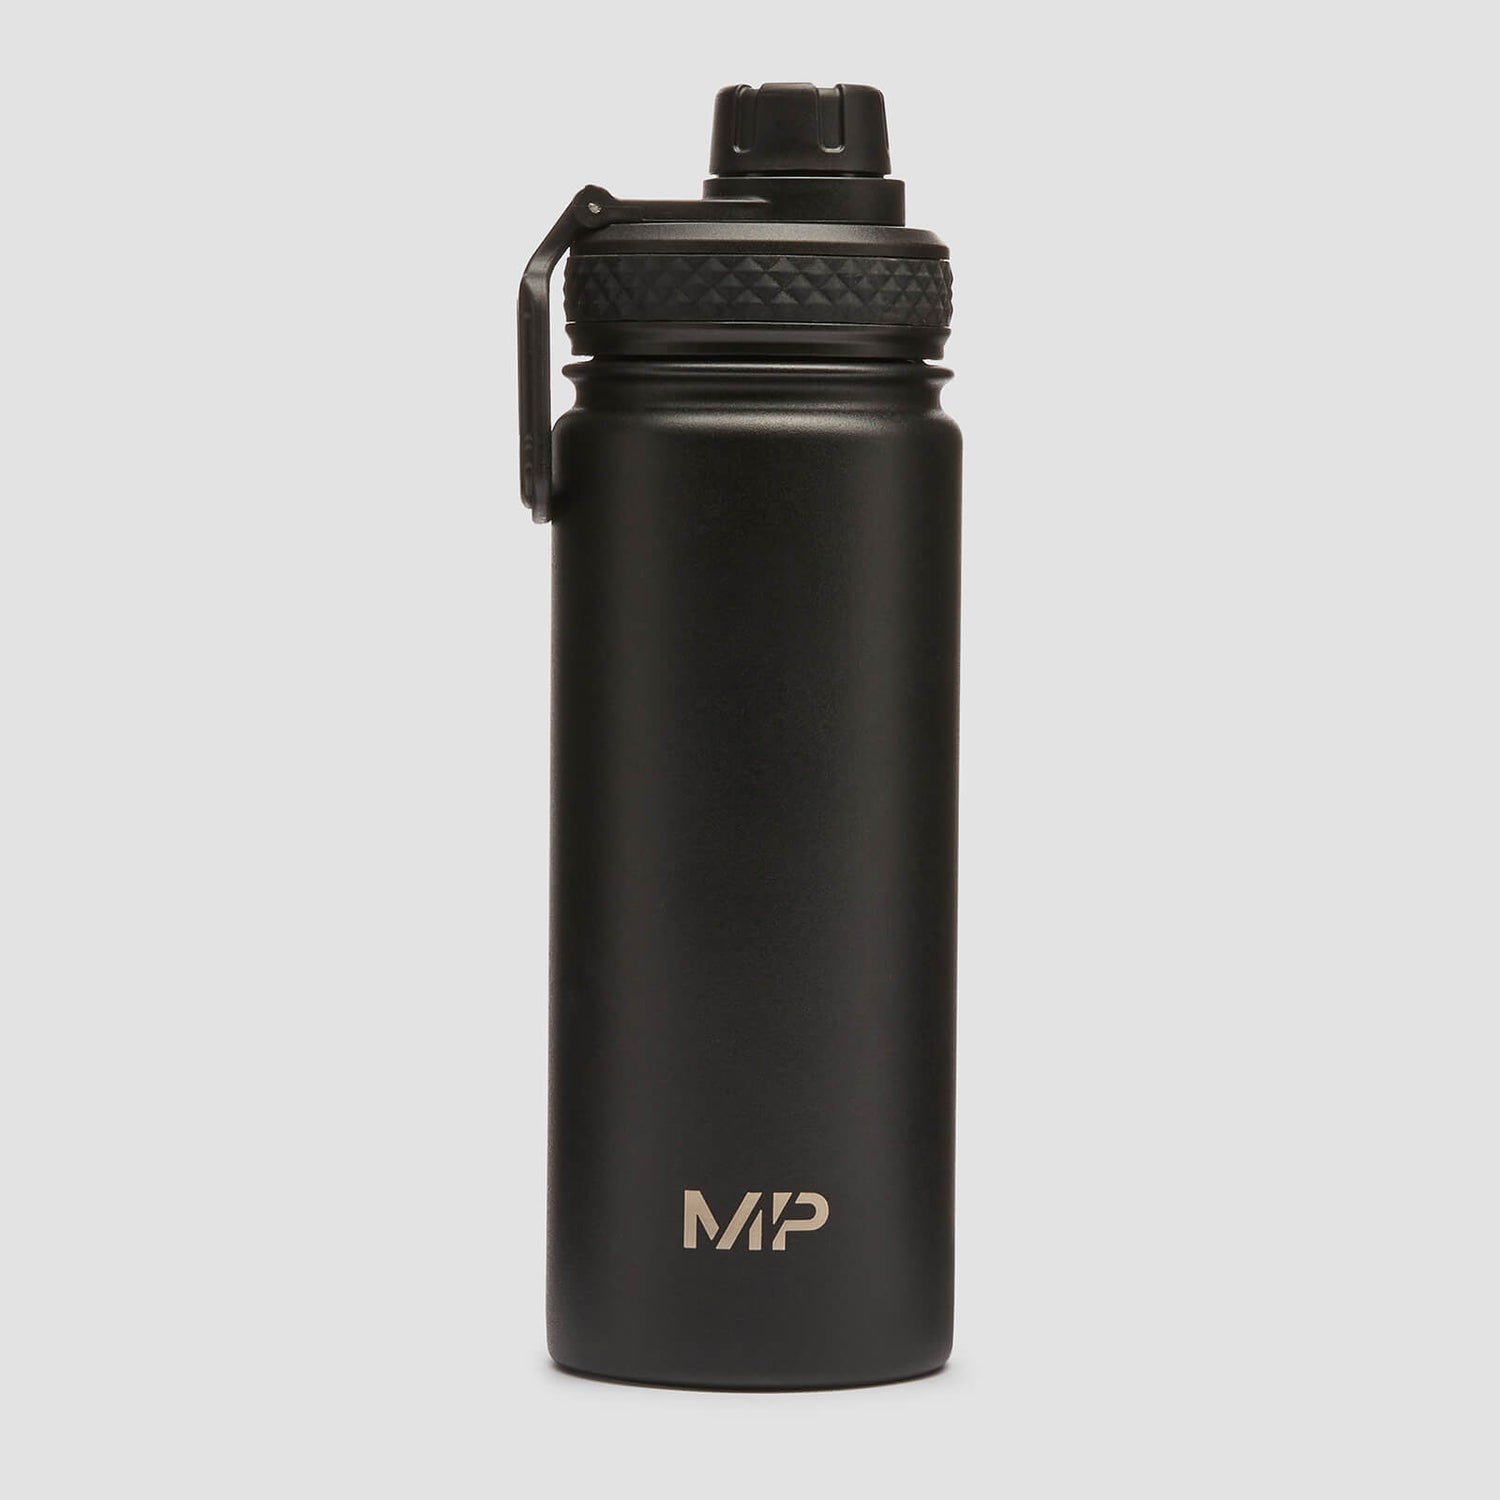 Μεταλλικό Μπουκάλι Νερού MP Μετρίου Μεγέθους - Μαύρο - 500 ml